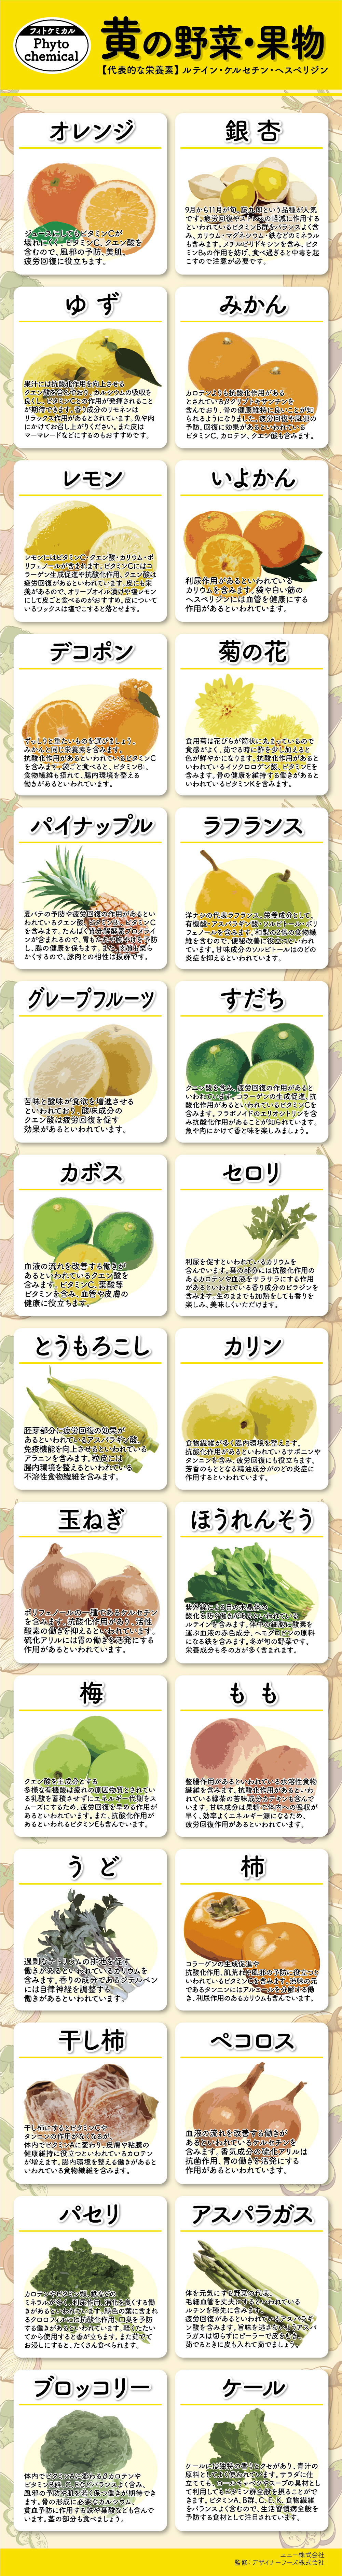 黄の野菜 果物 フィトケミカル